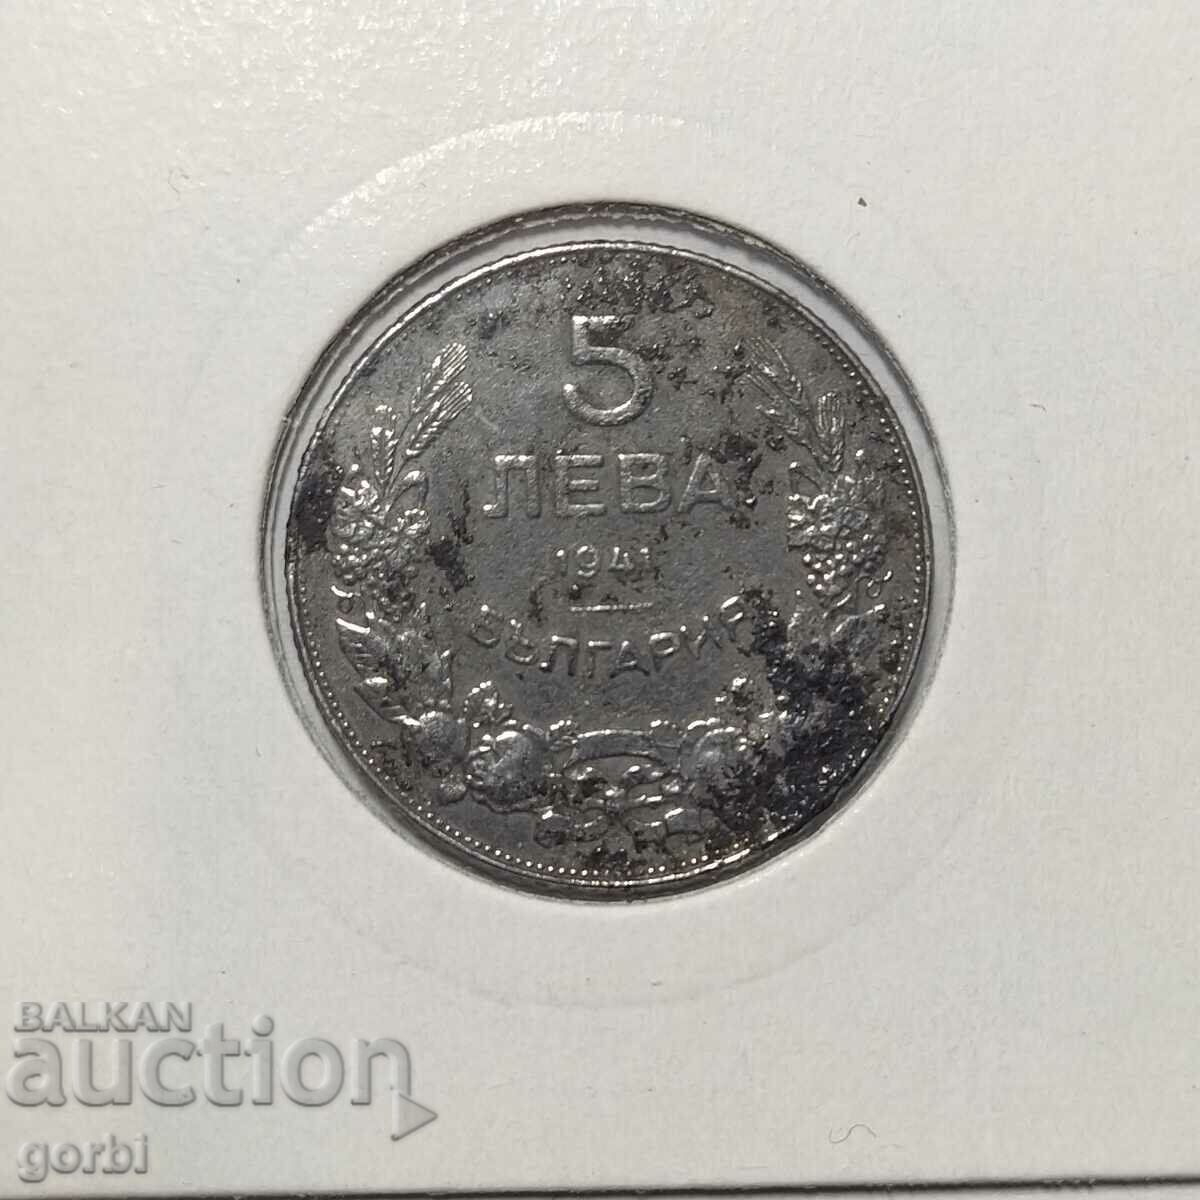 5 BGN 1941. Ένα καλό συλλεκτικό νόμισμα!